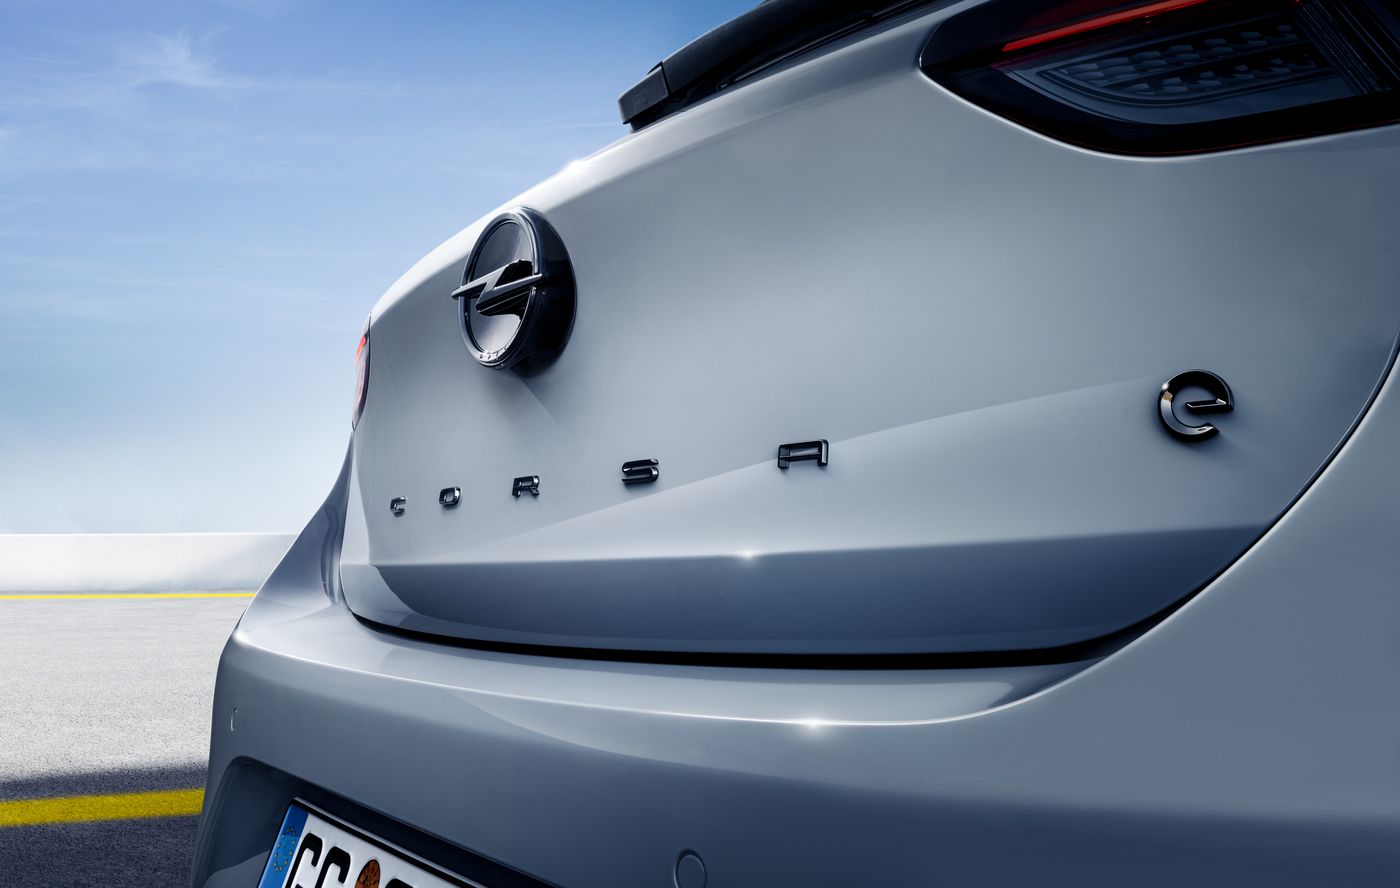 Entra en acción un nuevo Opel Corsa eléctrico con 51 kWh y hasta 402 kilómetros de autonomía